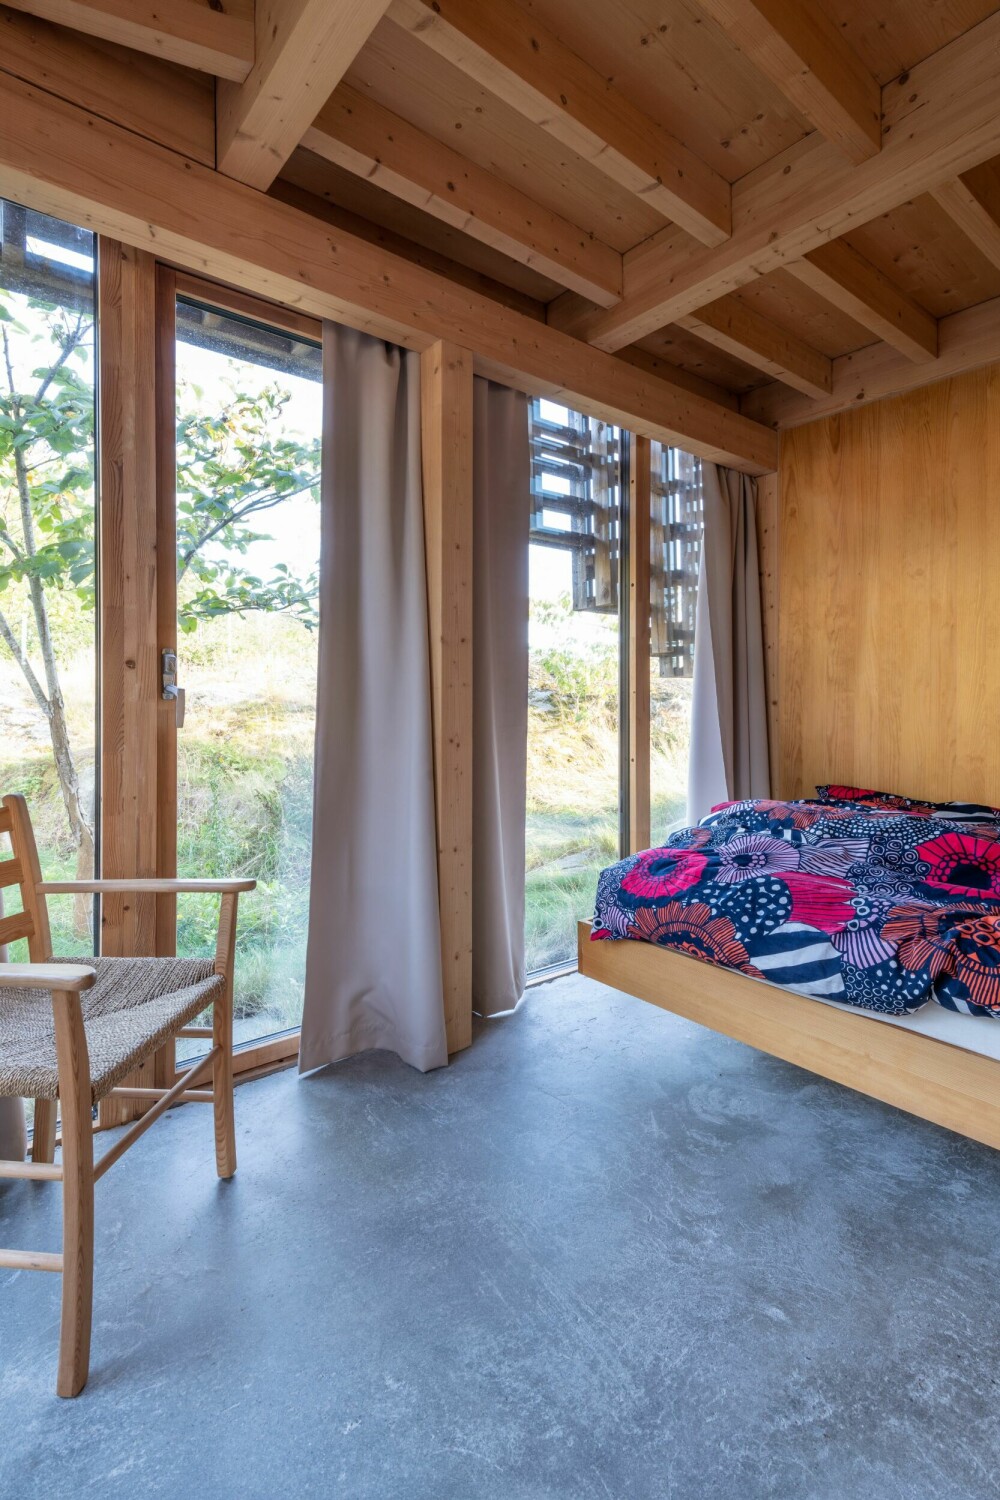 SOVEROM: Også på soverommet er man i nær kontakt med naturen utenfor, takket være glasspanelene som strekker seg fra gulv til tak. Sengetøyet er fra Marimekko.